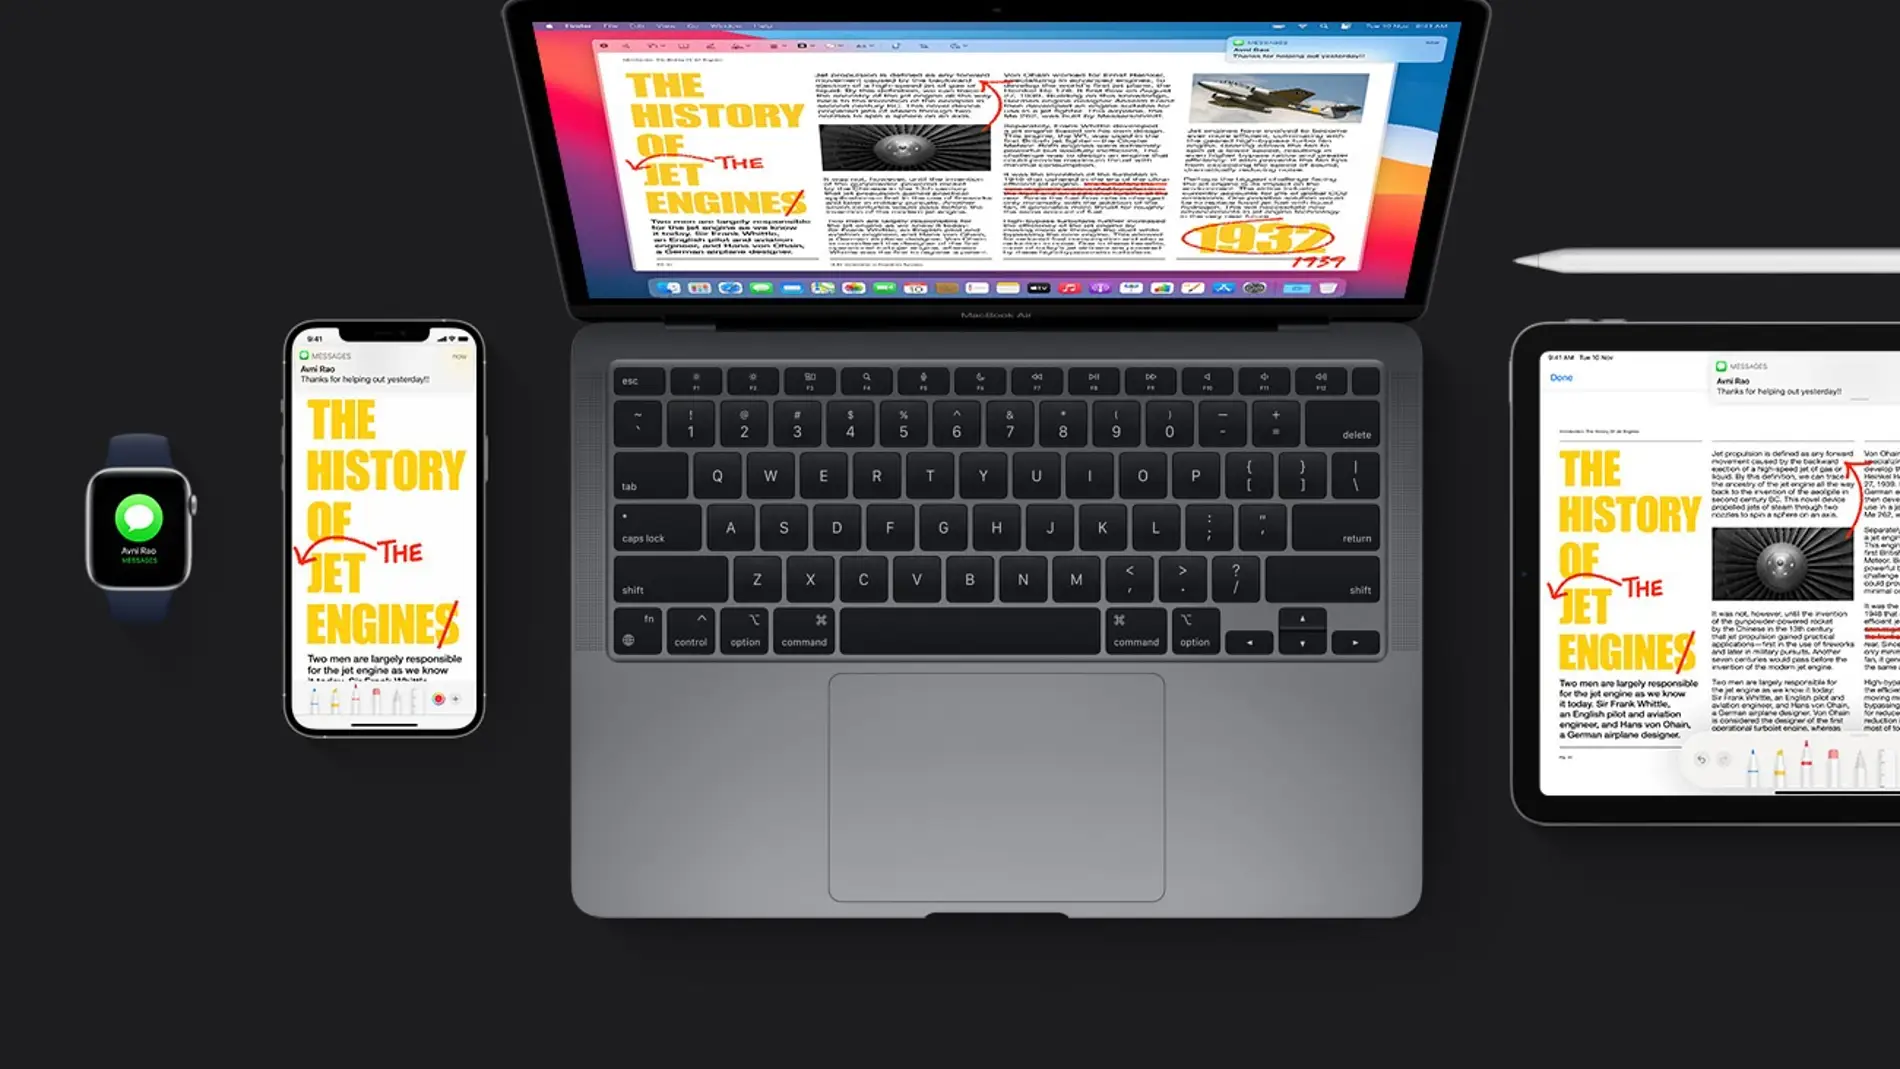 Evita que tu MacBook se sobrecaliente con estos trucos